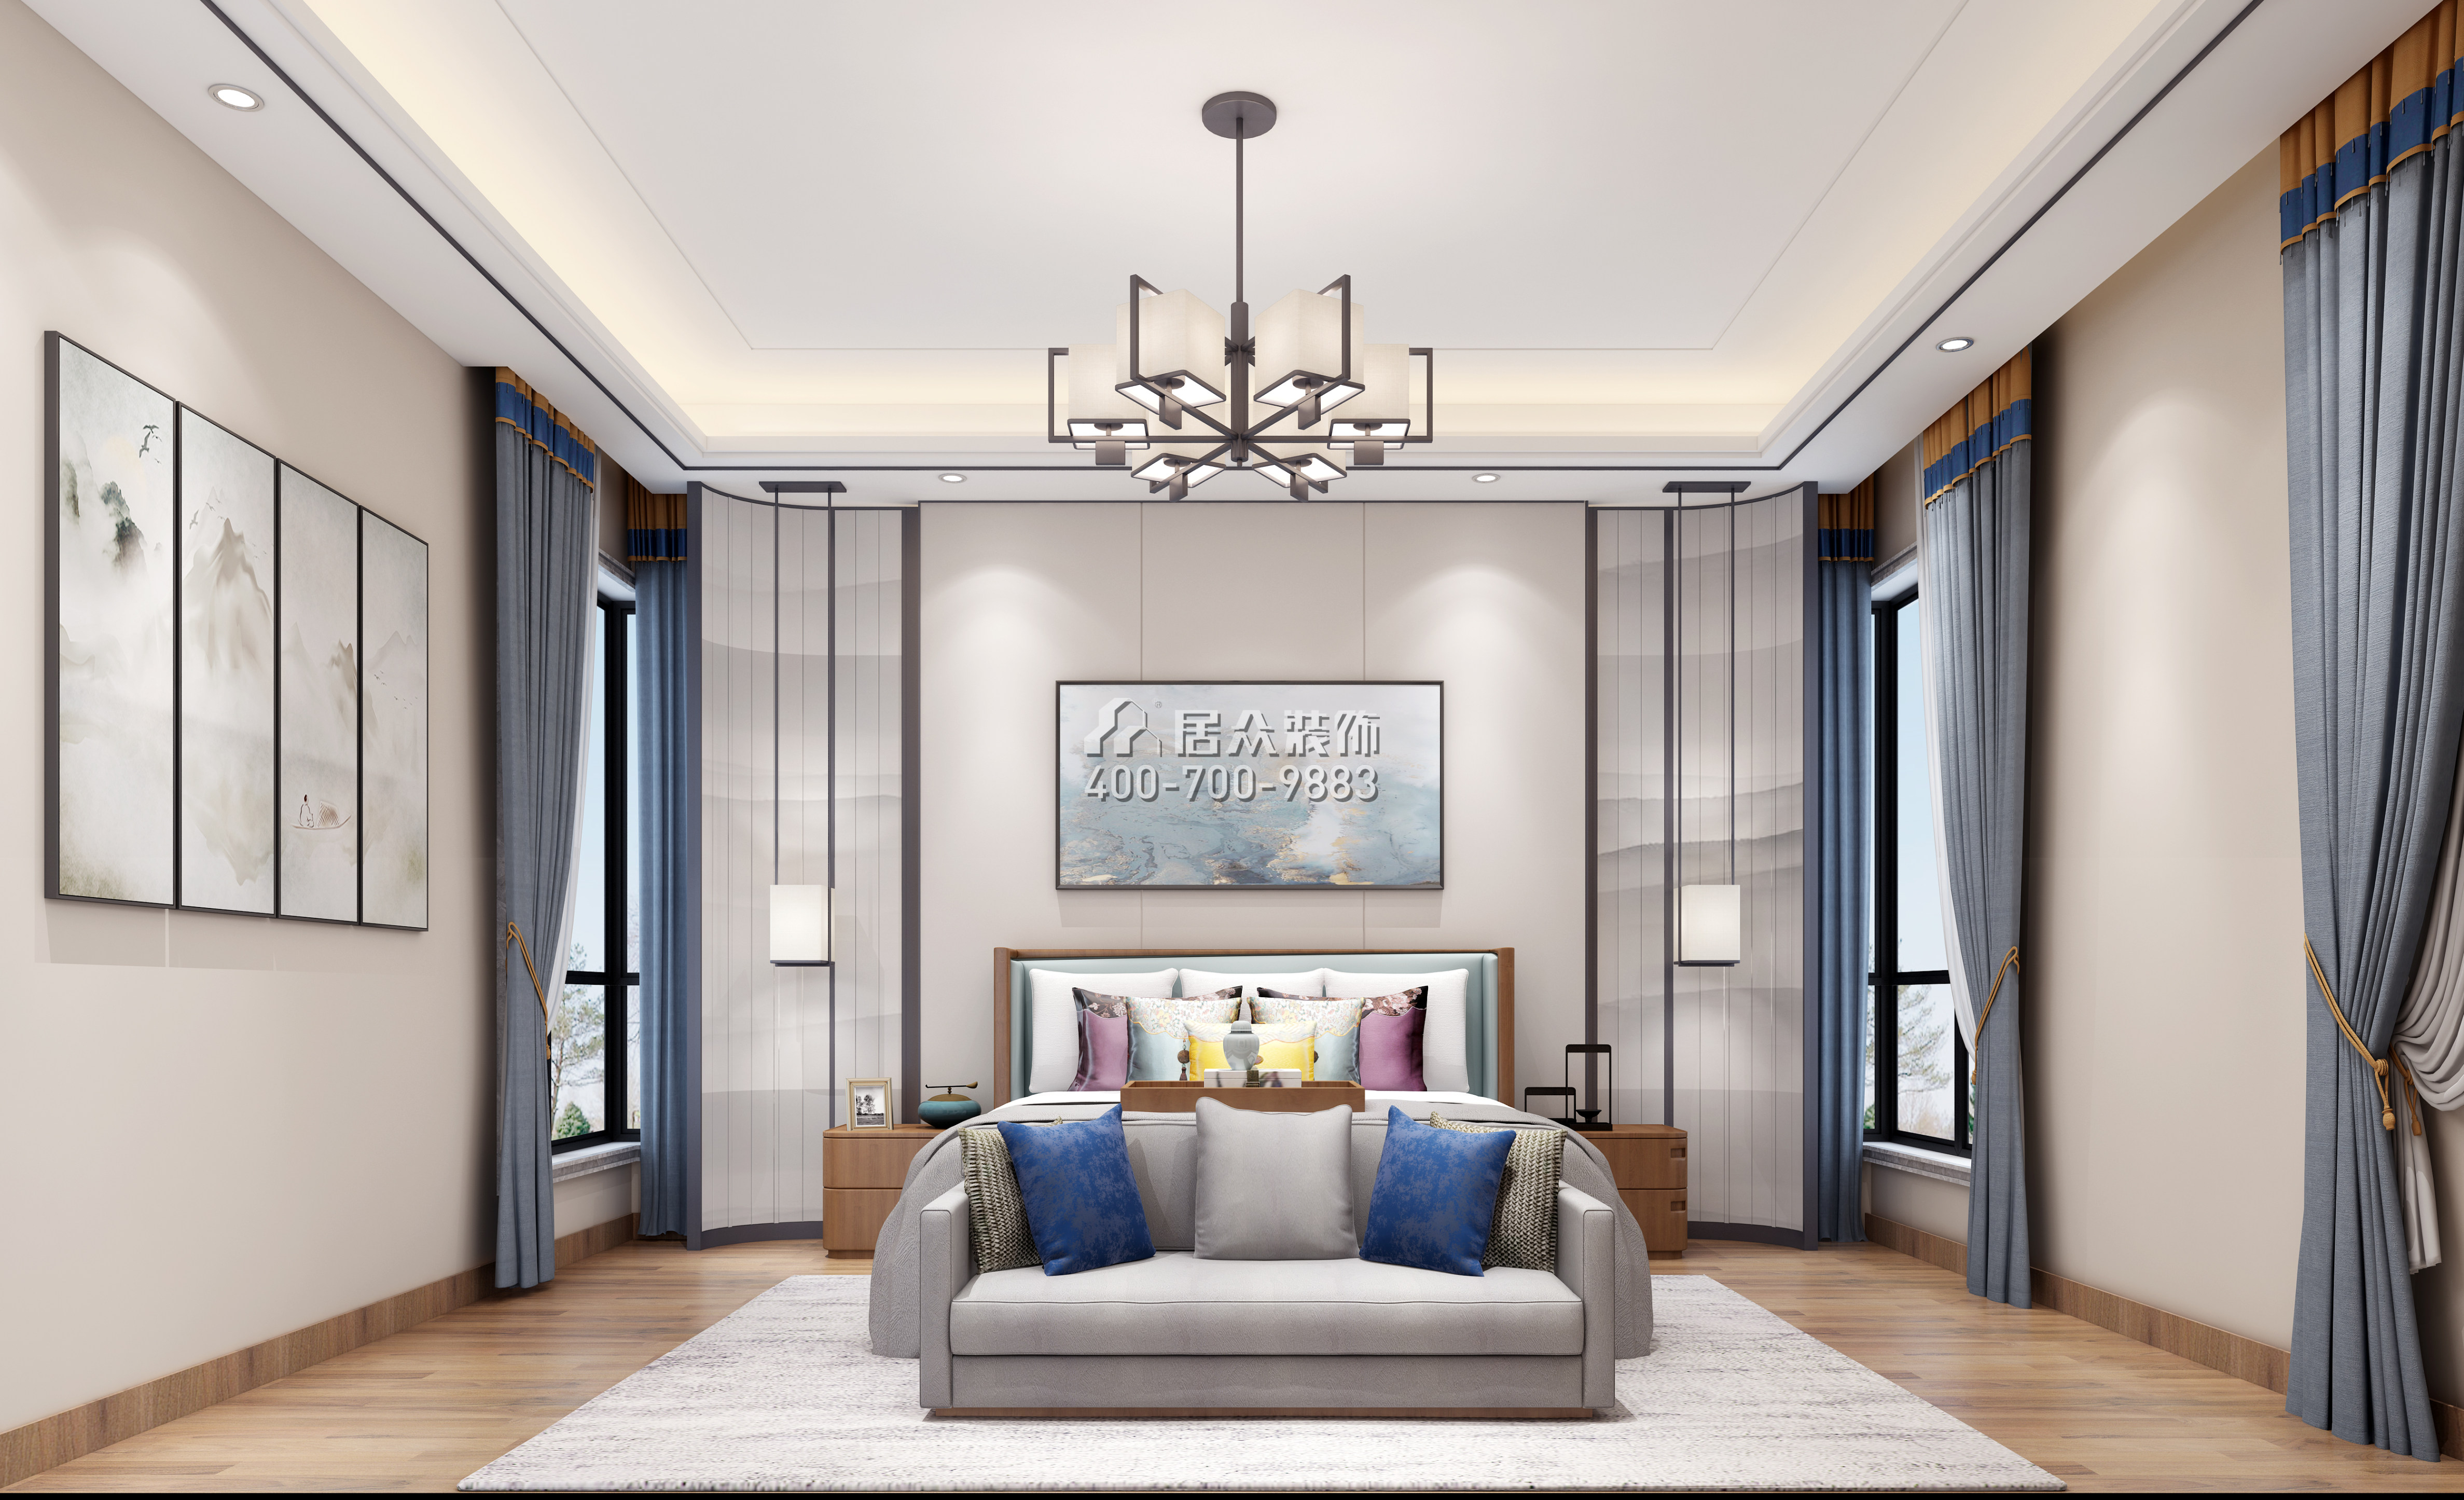 丽水佳园390平方米中式风格3户型卧室装修效果图